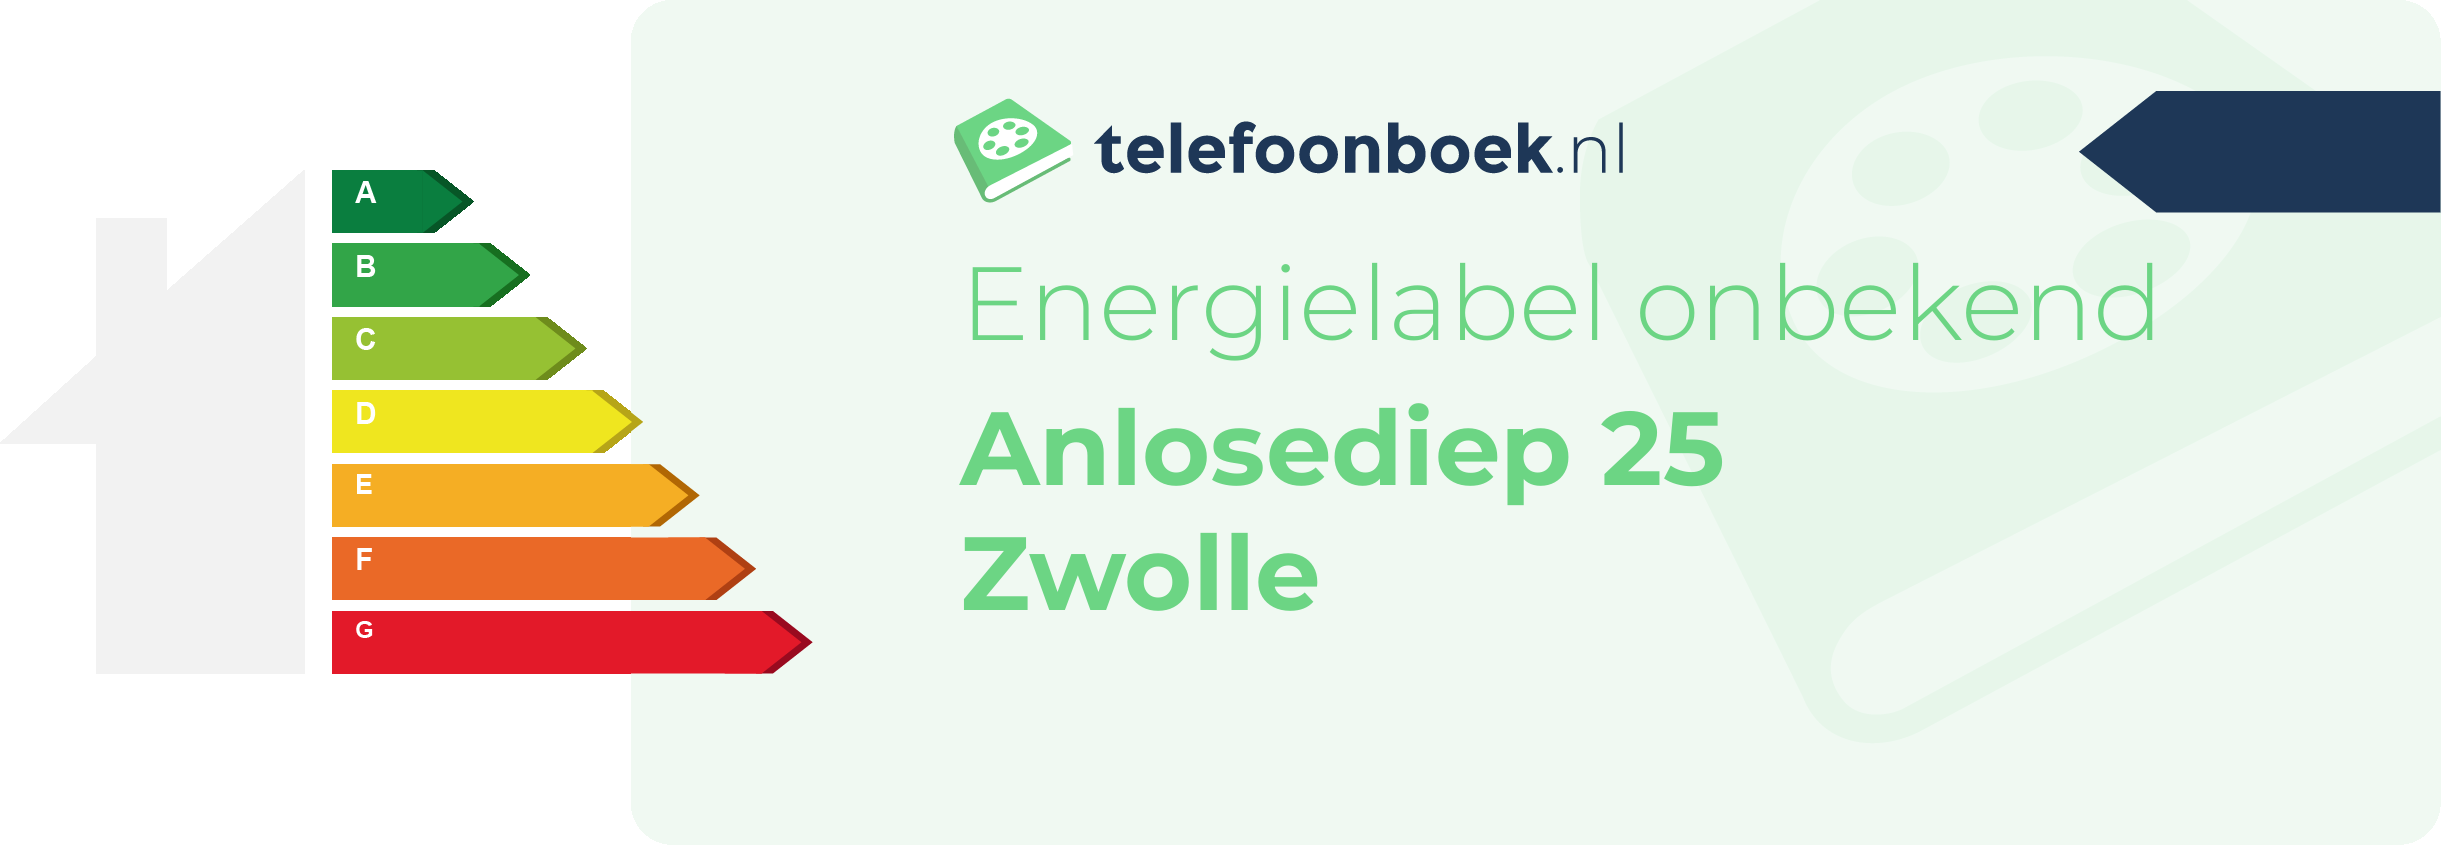 Energielabel Anlosediep 25 Zwolle